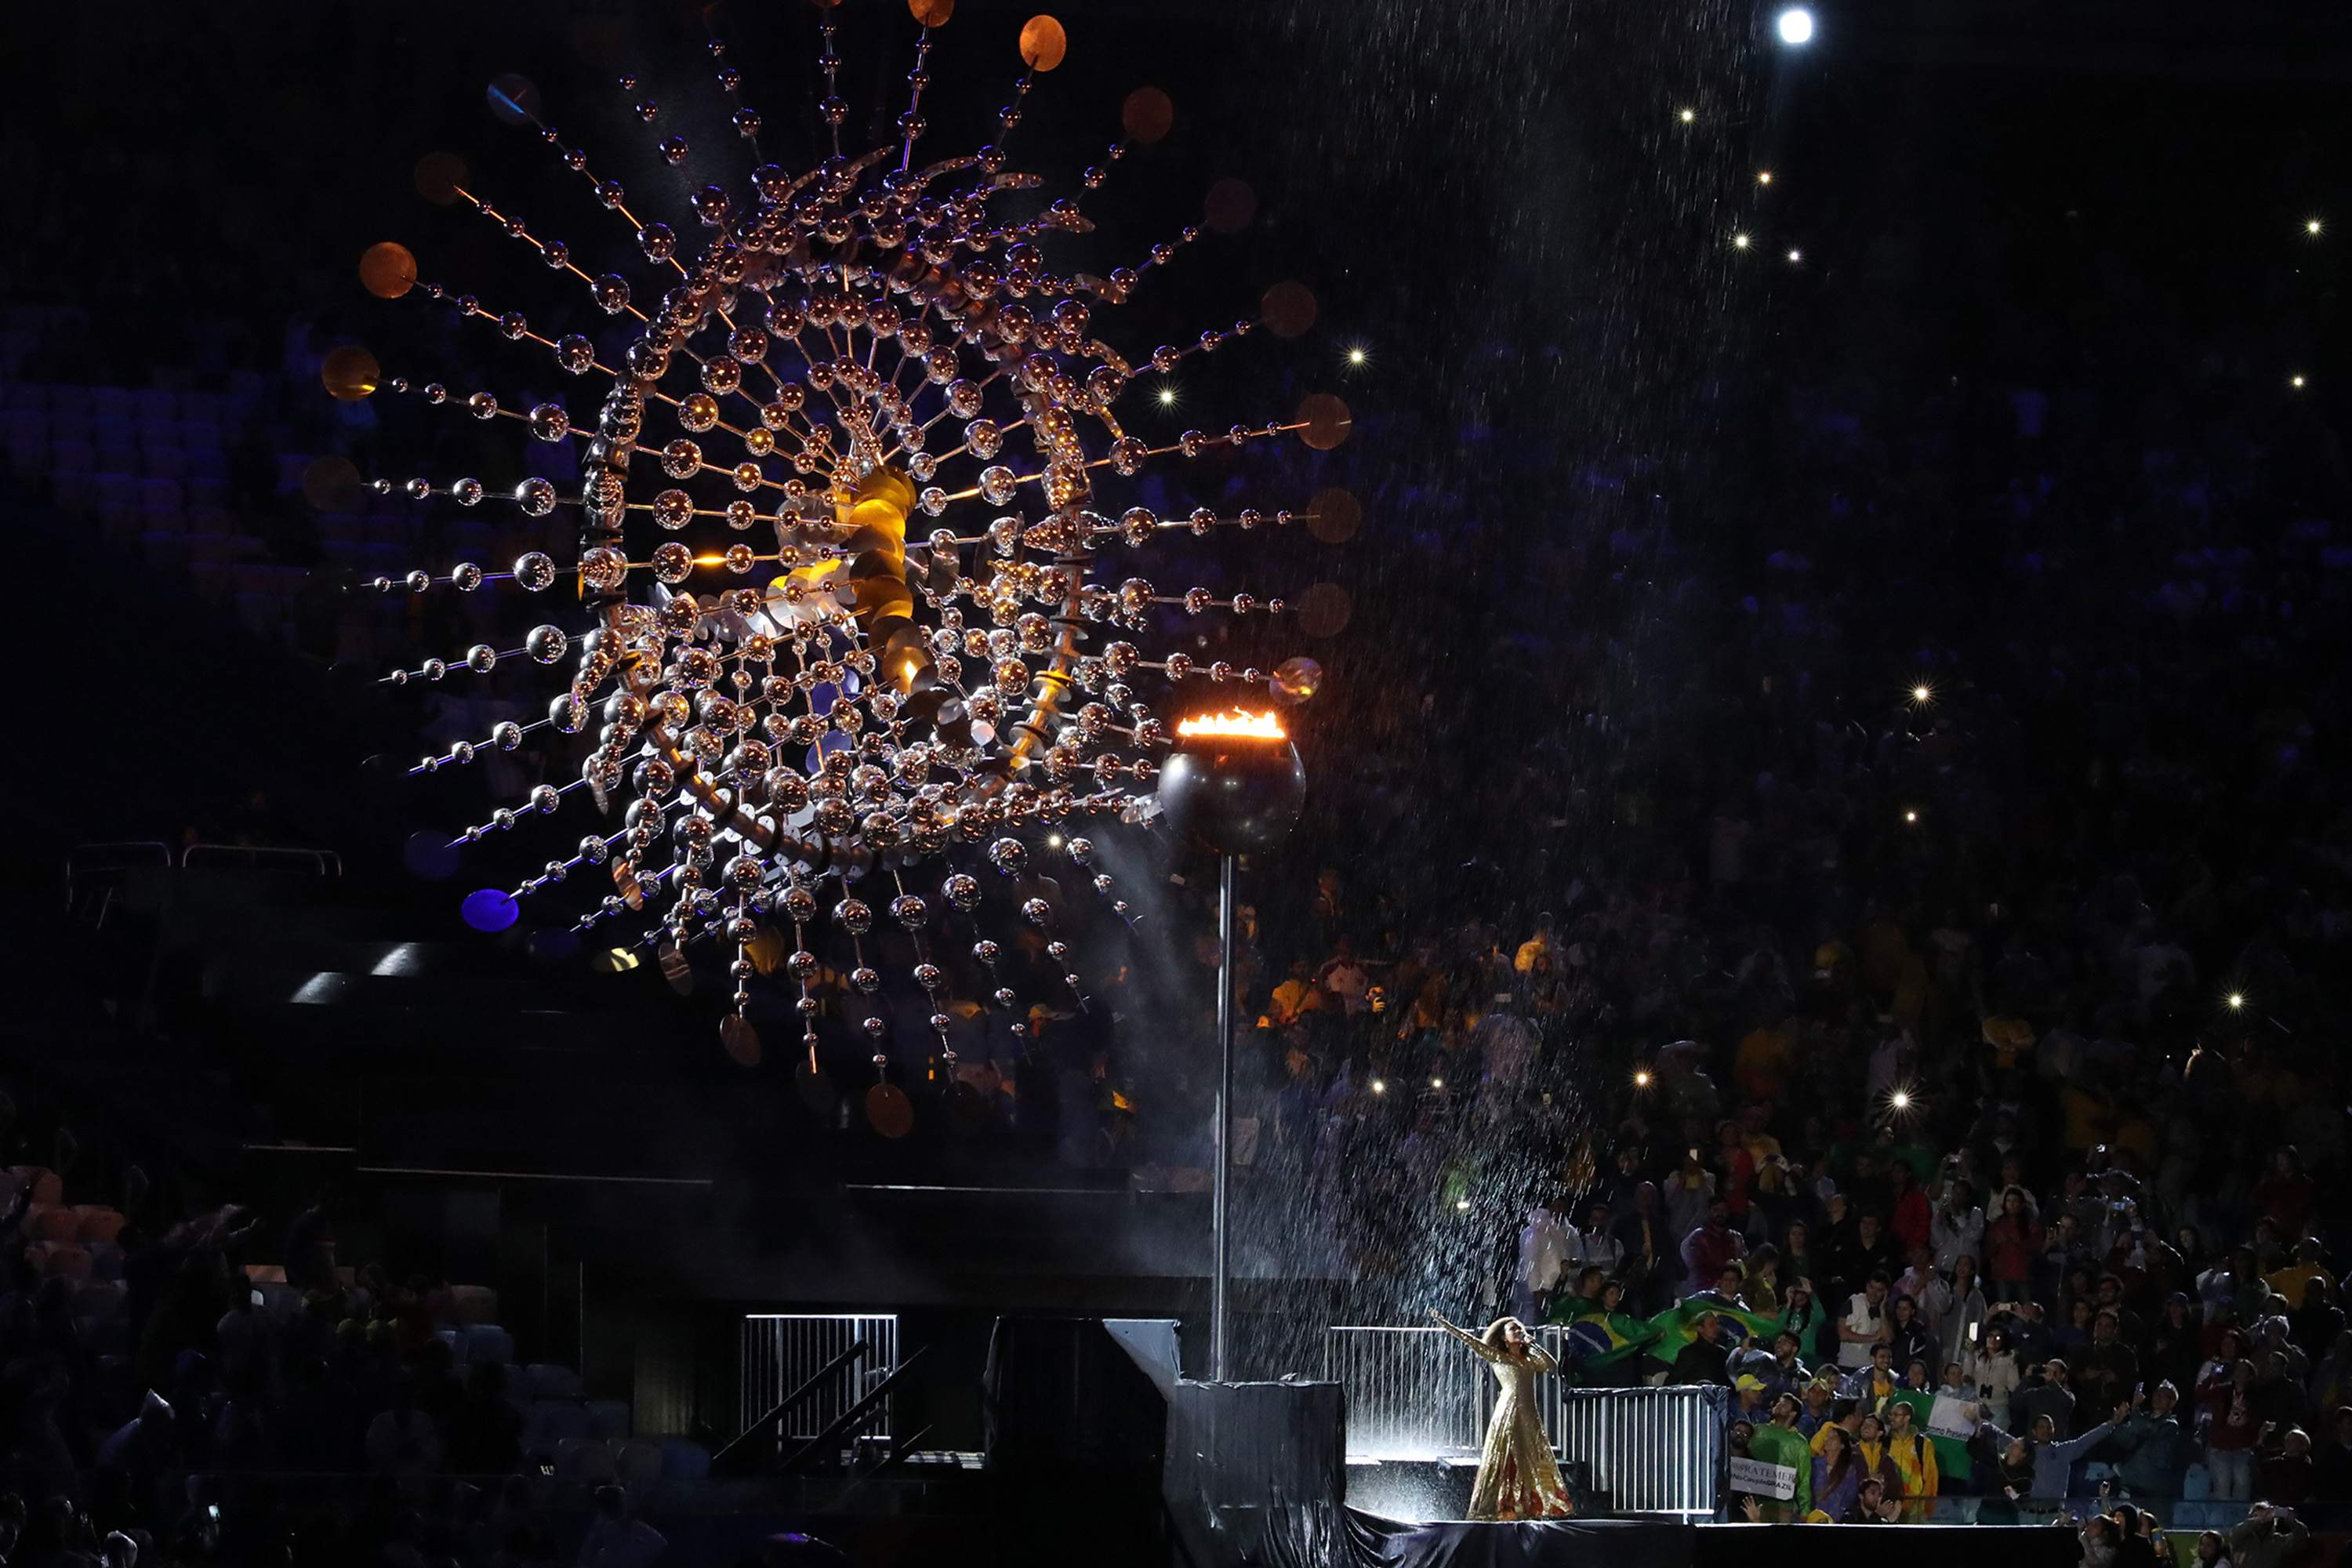 Rio 2016 - Closing ceremonies